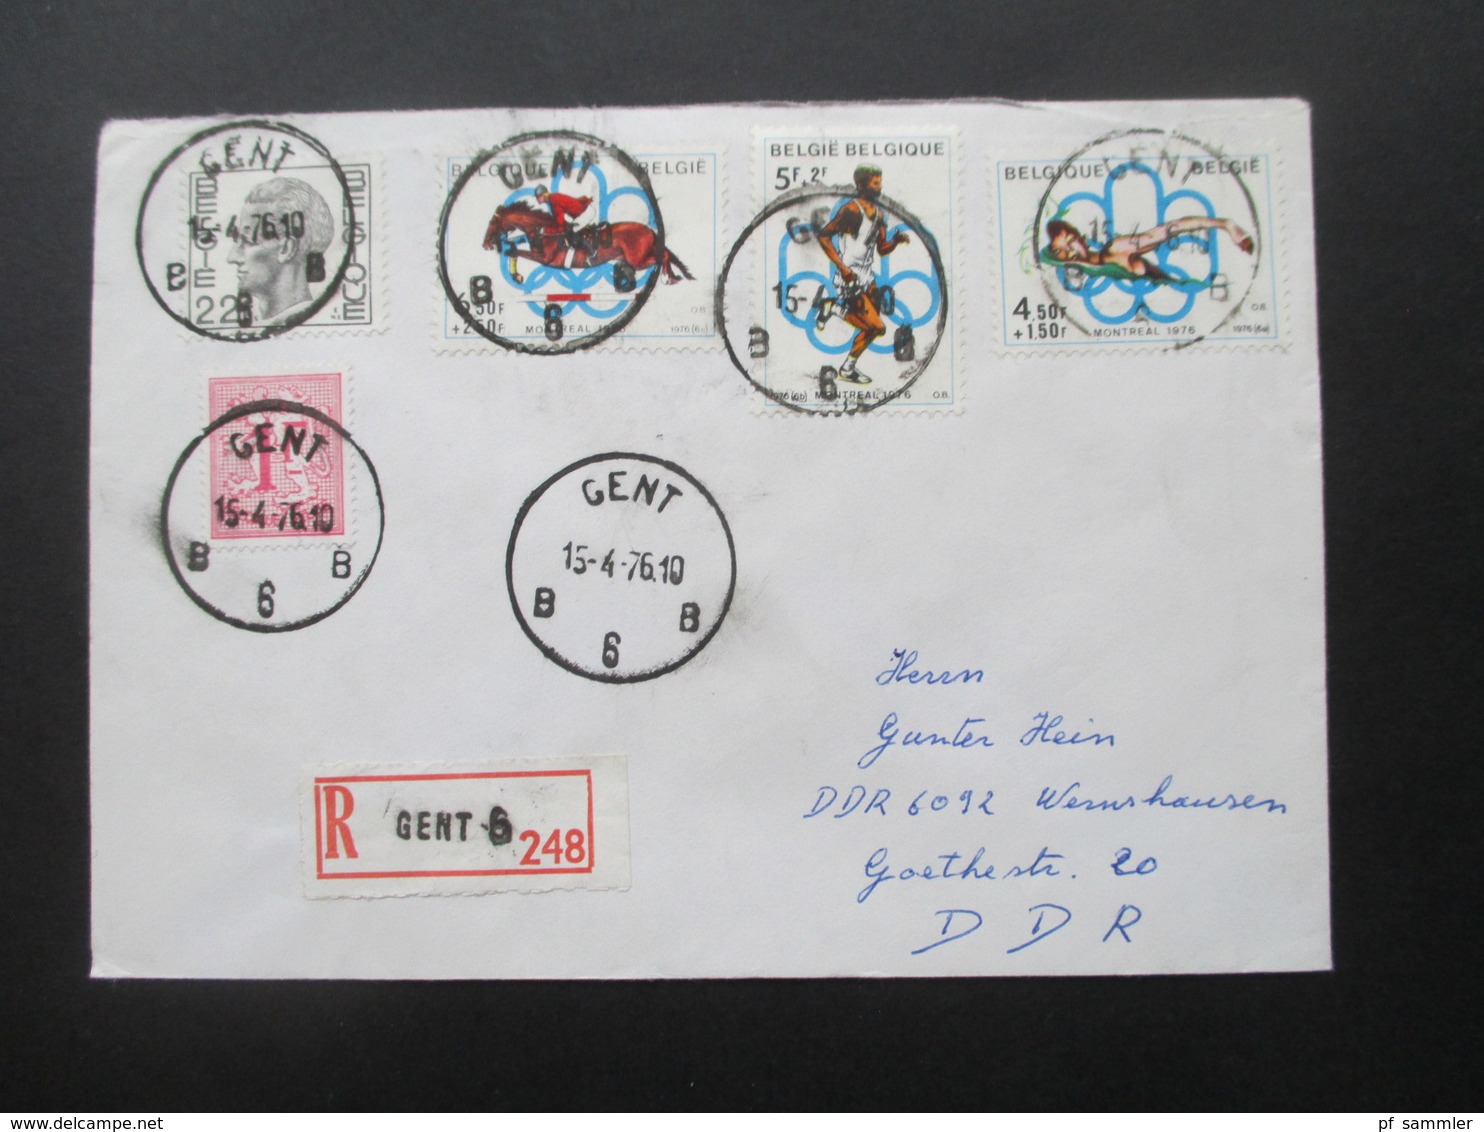 Belgien Belege 1958 - 1976 Einschreiben / Sondermarken teilweise Randstücke insgesamt 95 Stück schöner Stöberposten